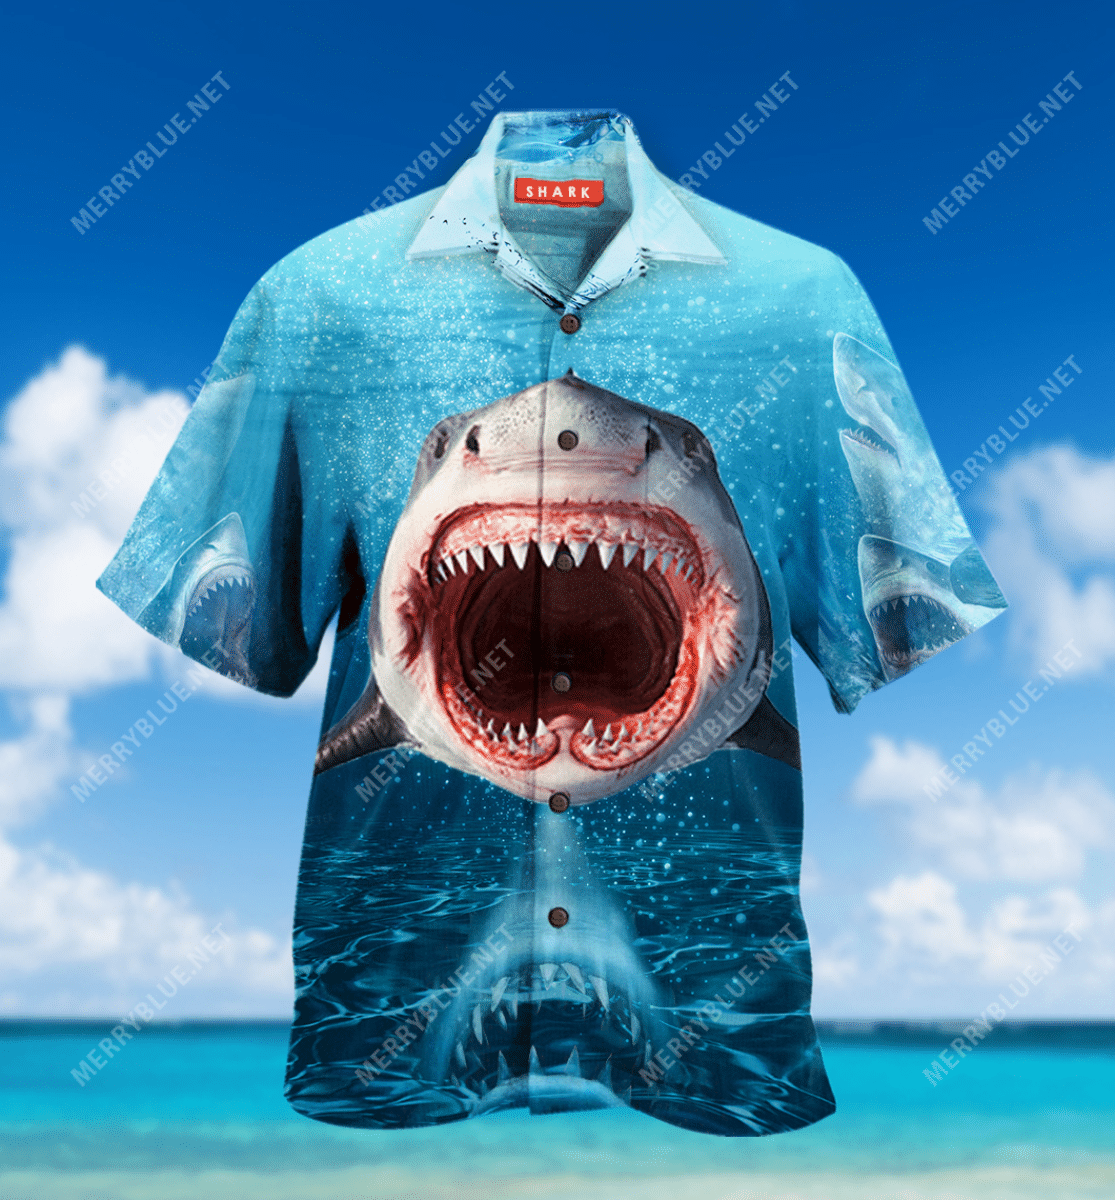 Show Your Teeth Shark Hawaiian Shirt